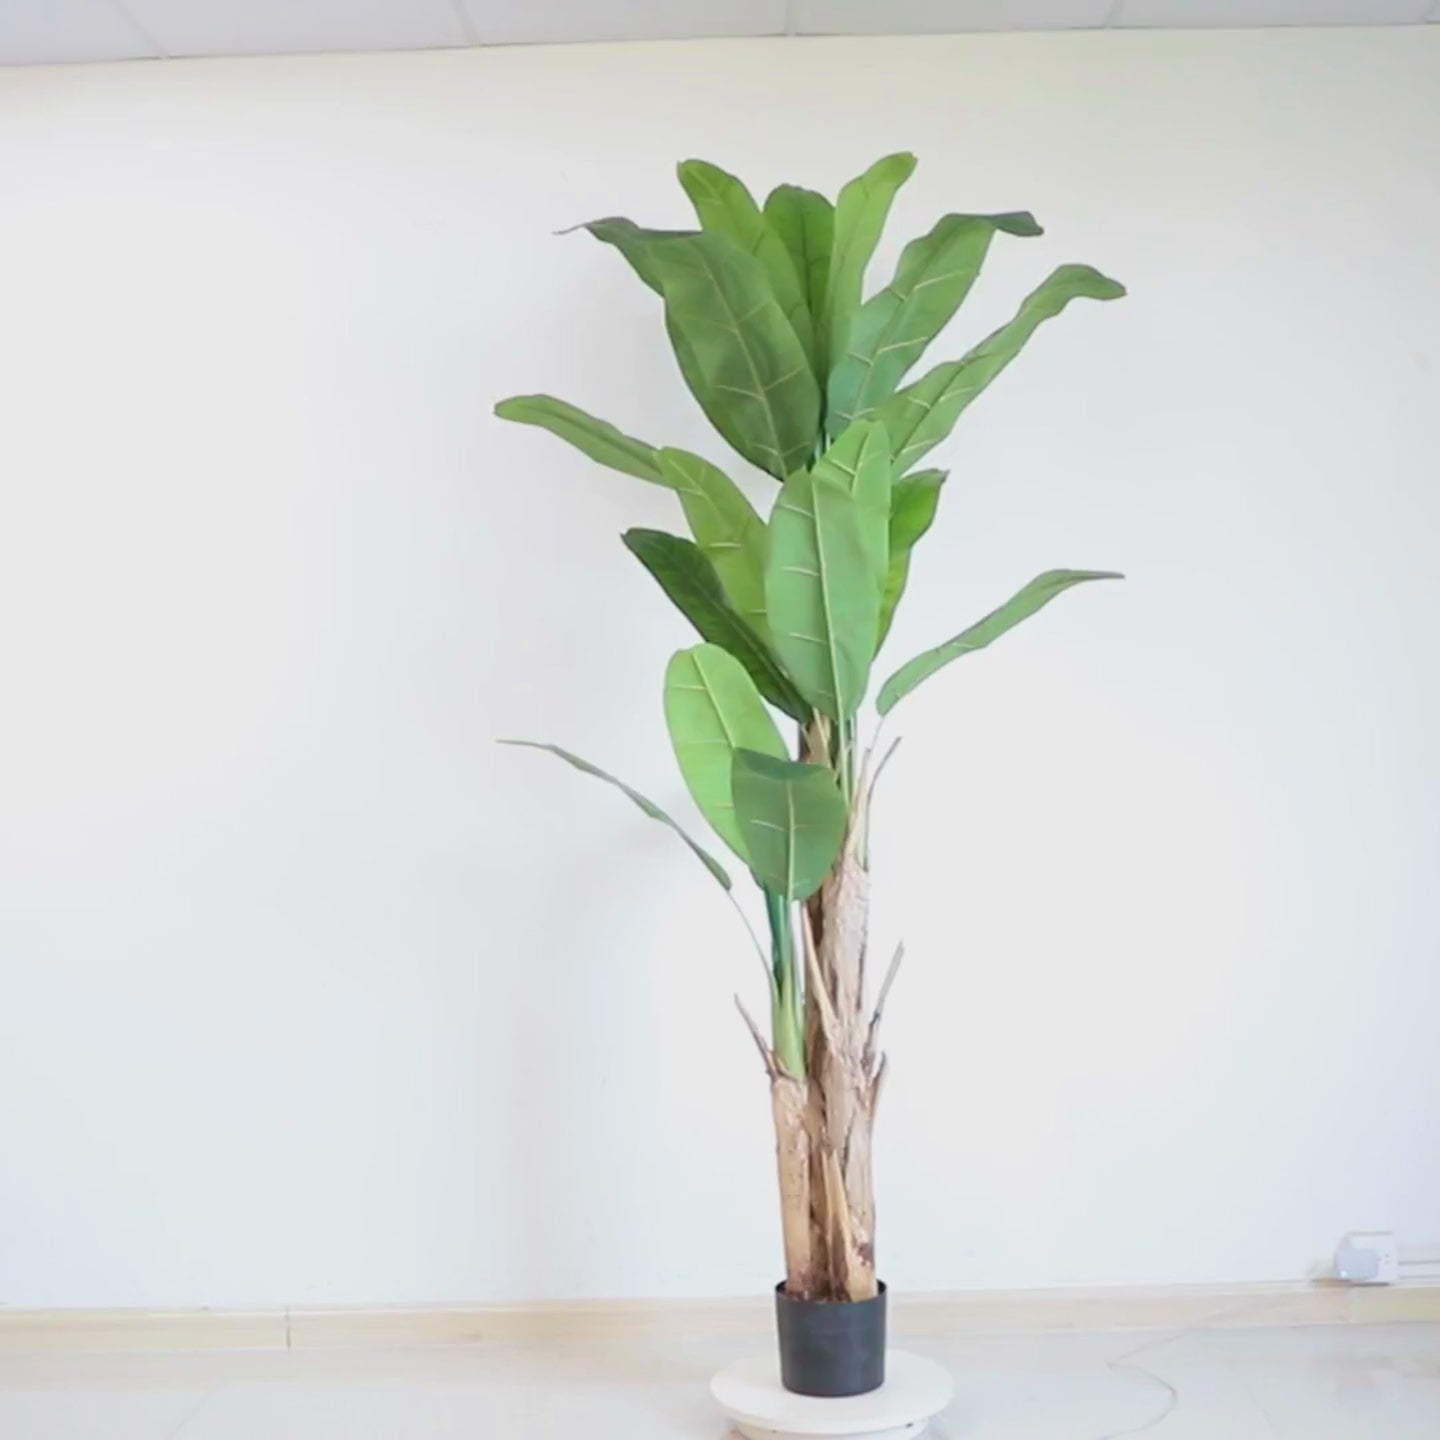 וידאו של עץ בננה מלאכותי ריאליסטי